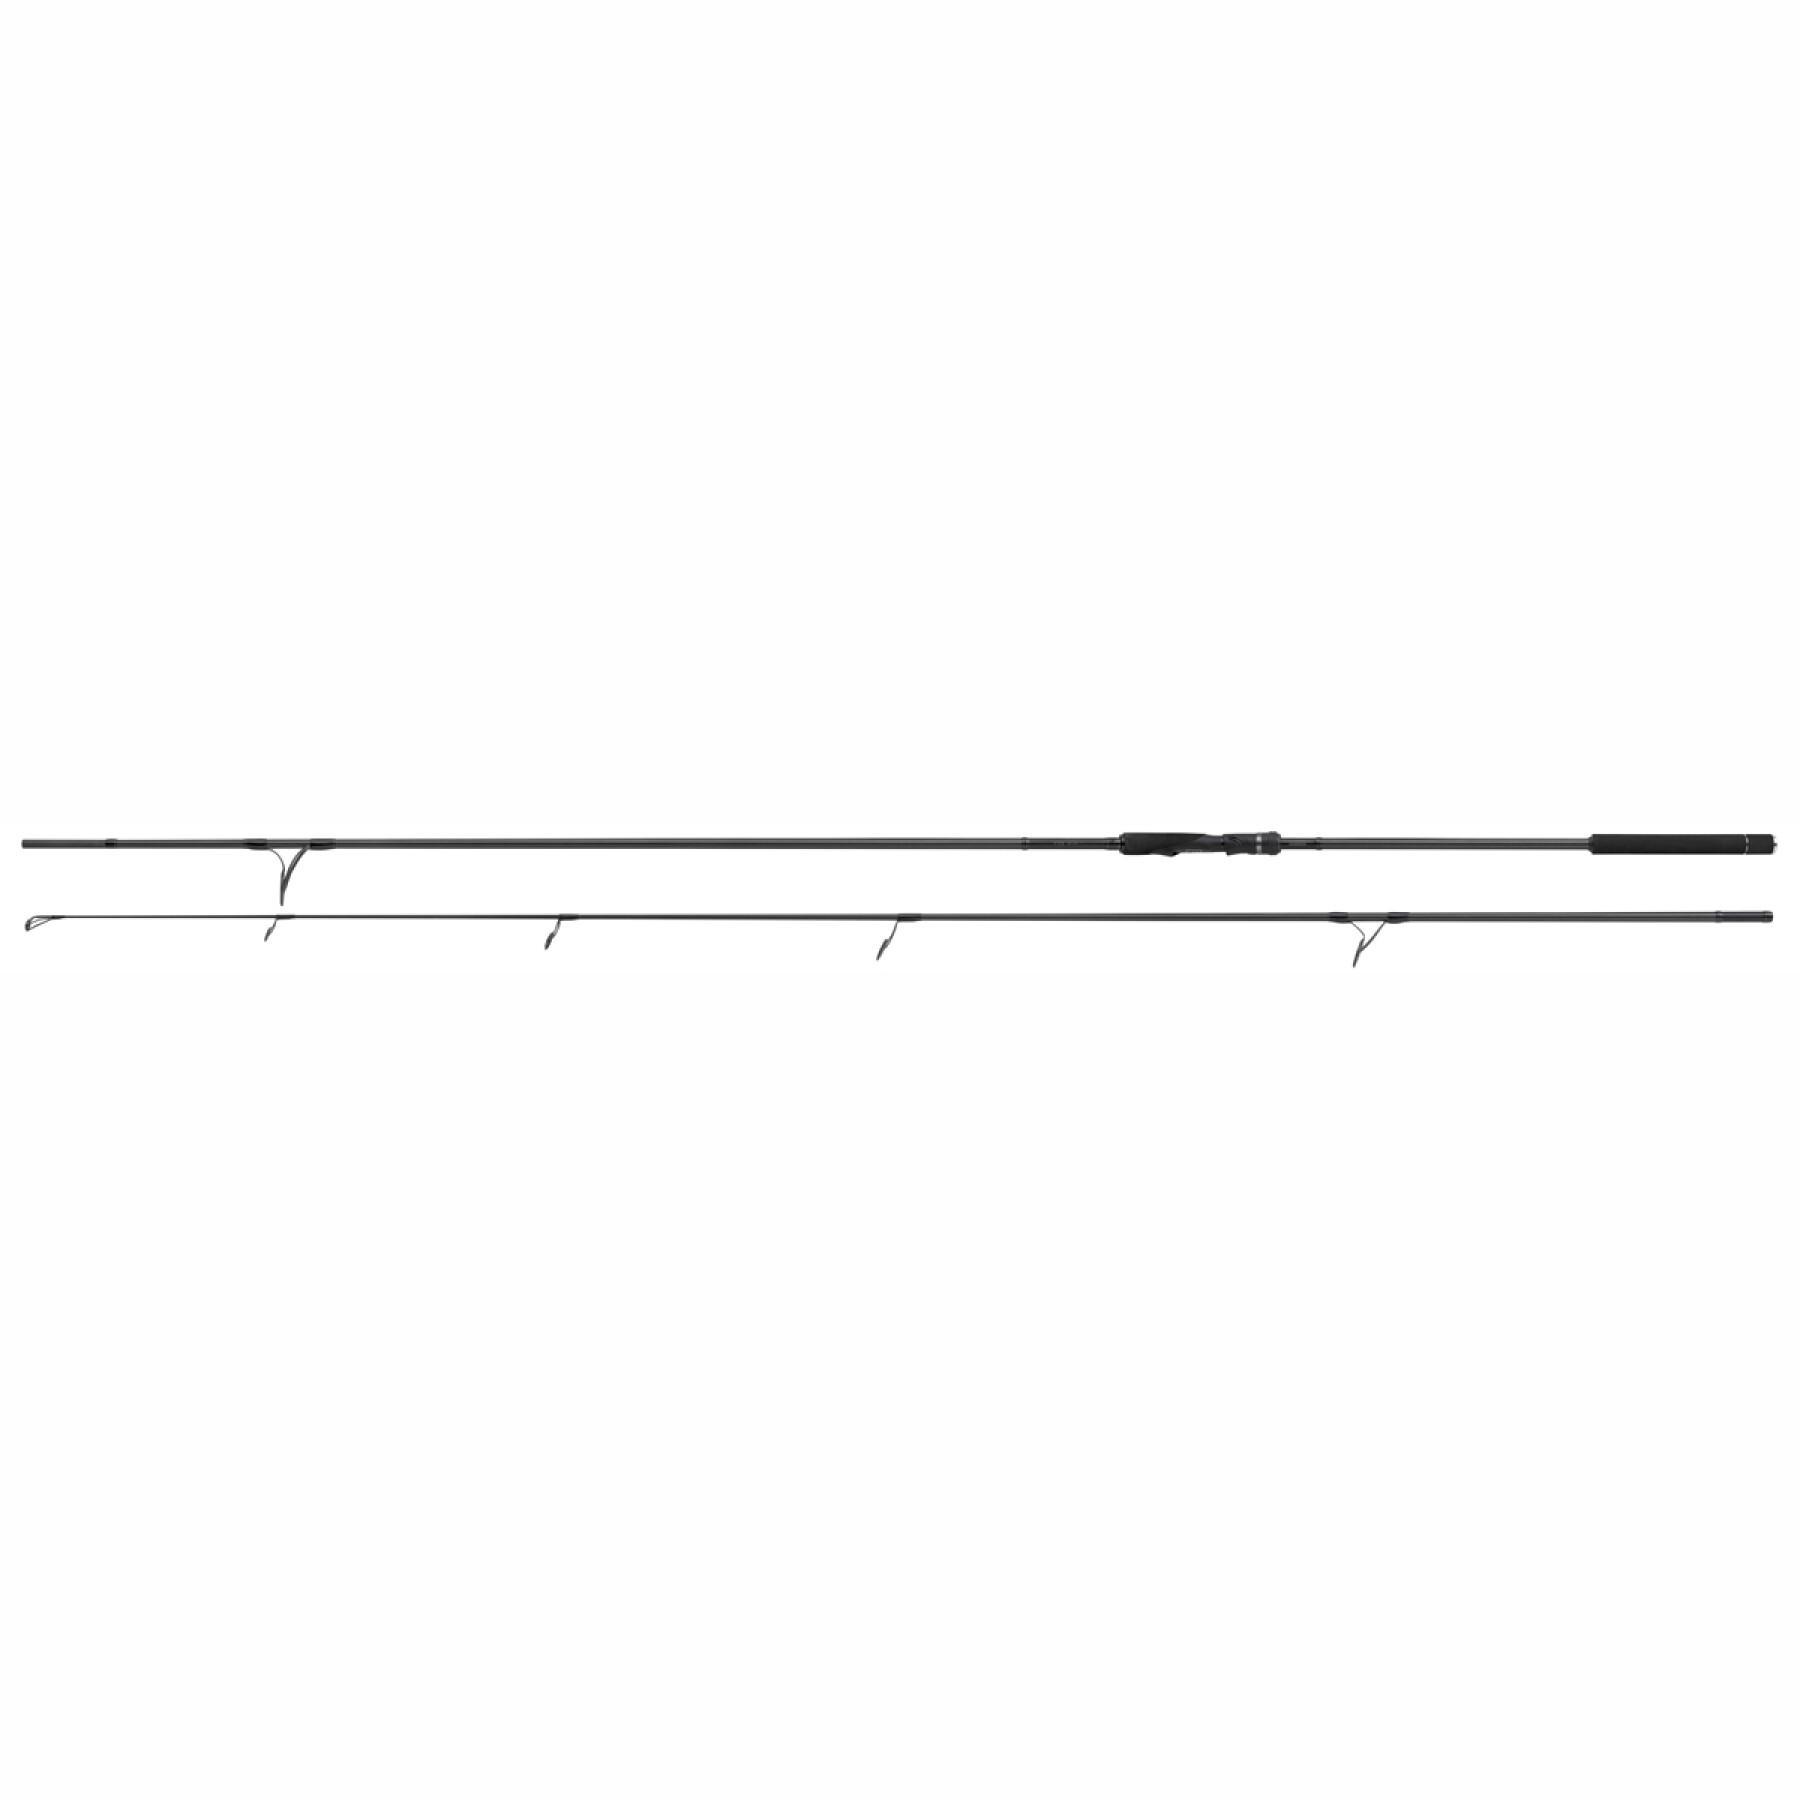 Canna da carpa Shimano TX-9A 12 ft 3,25 lb